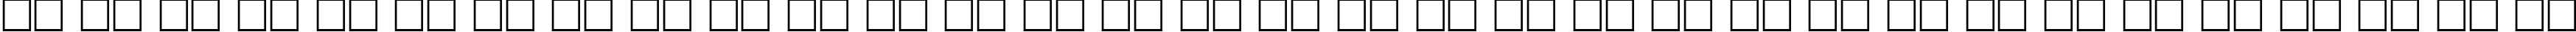 Пример написания русского алфавита шрифтом DG_Unbra